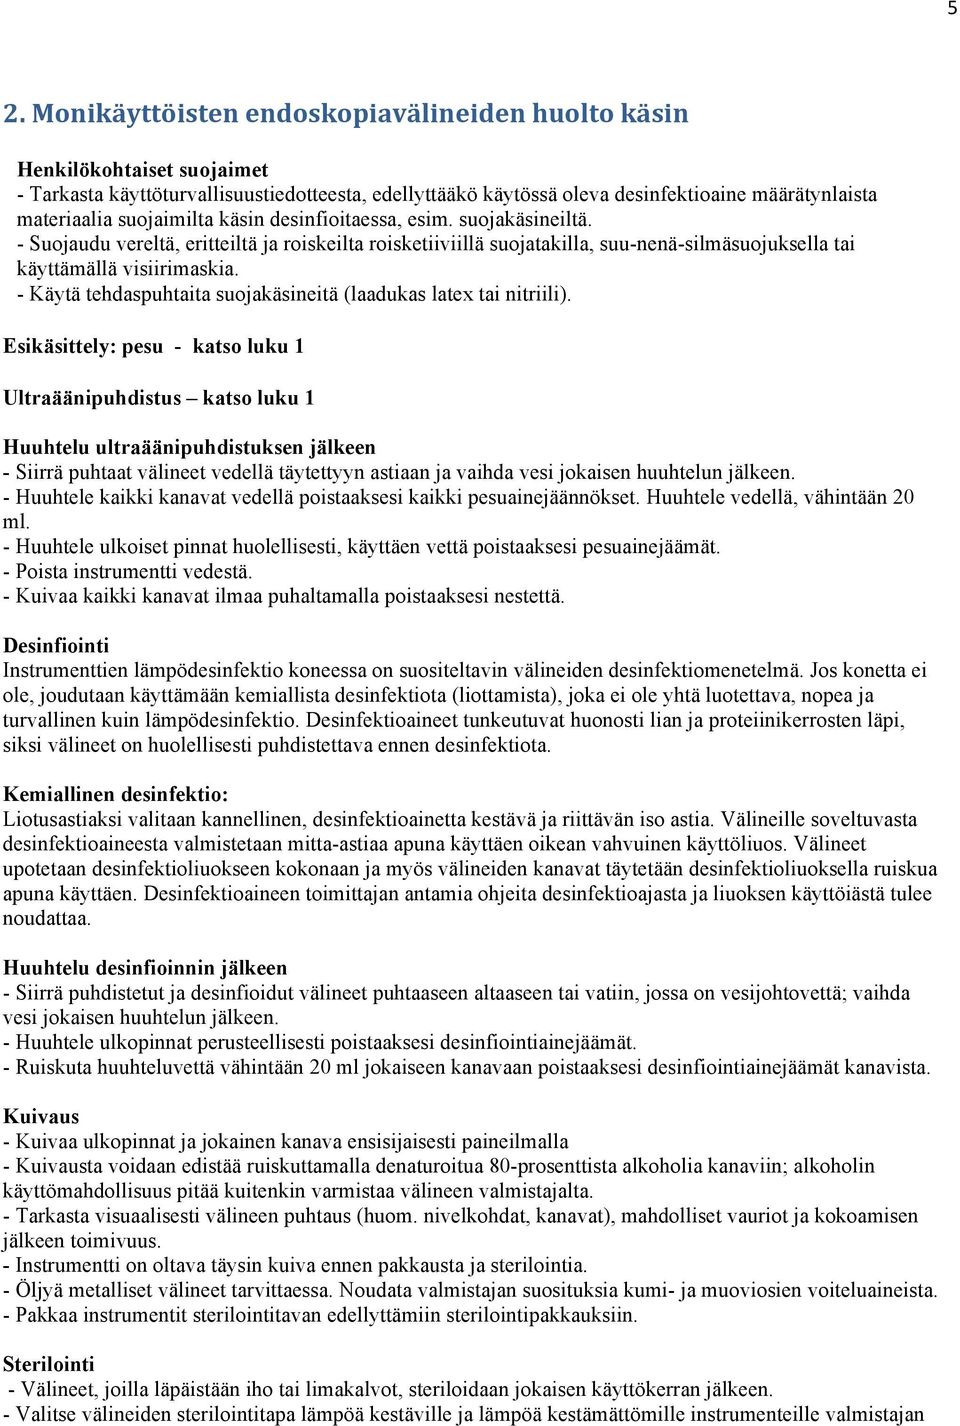 Suomen Gastroenterologiahoitajat ry Desinfektiotyöryhmä Monikäyttöisten  endoskopiavälineiden huolto koneellisesti ja käsin - PDF Free Download